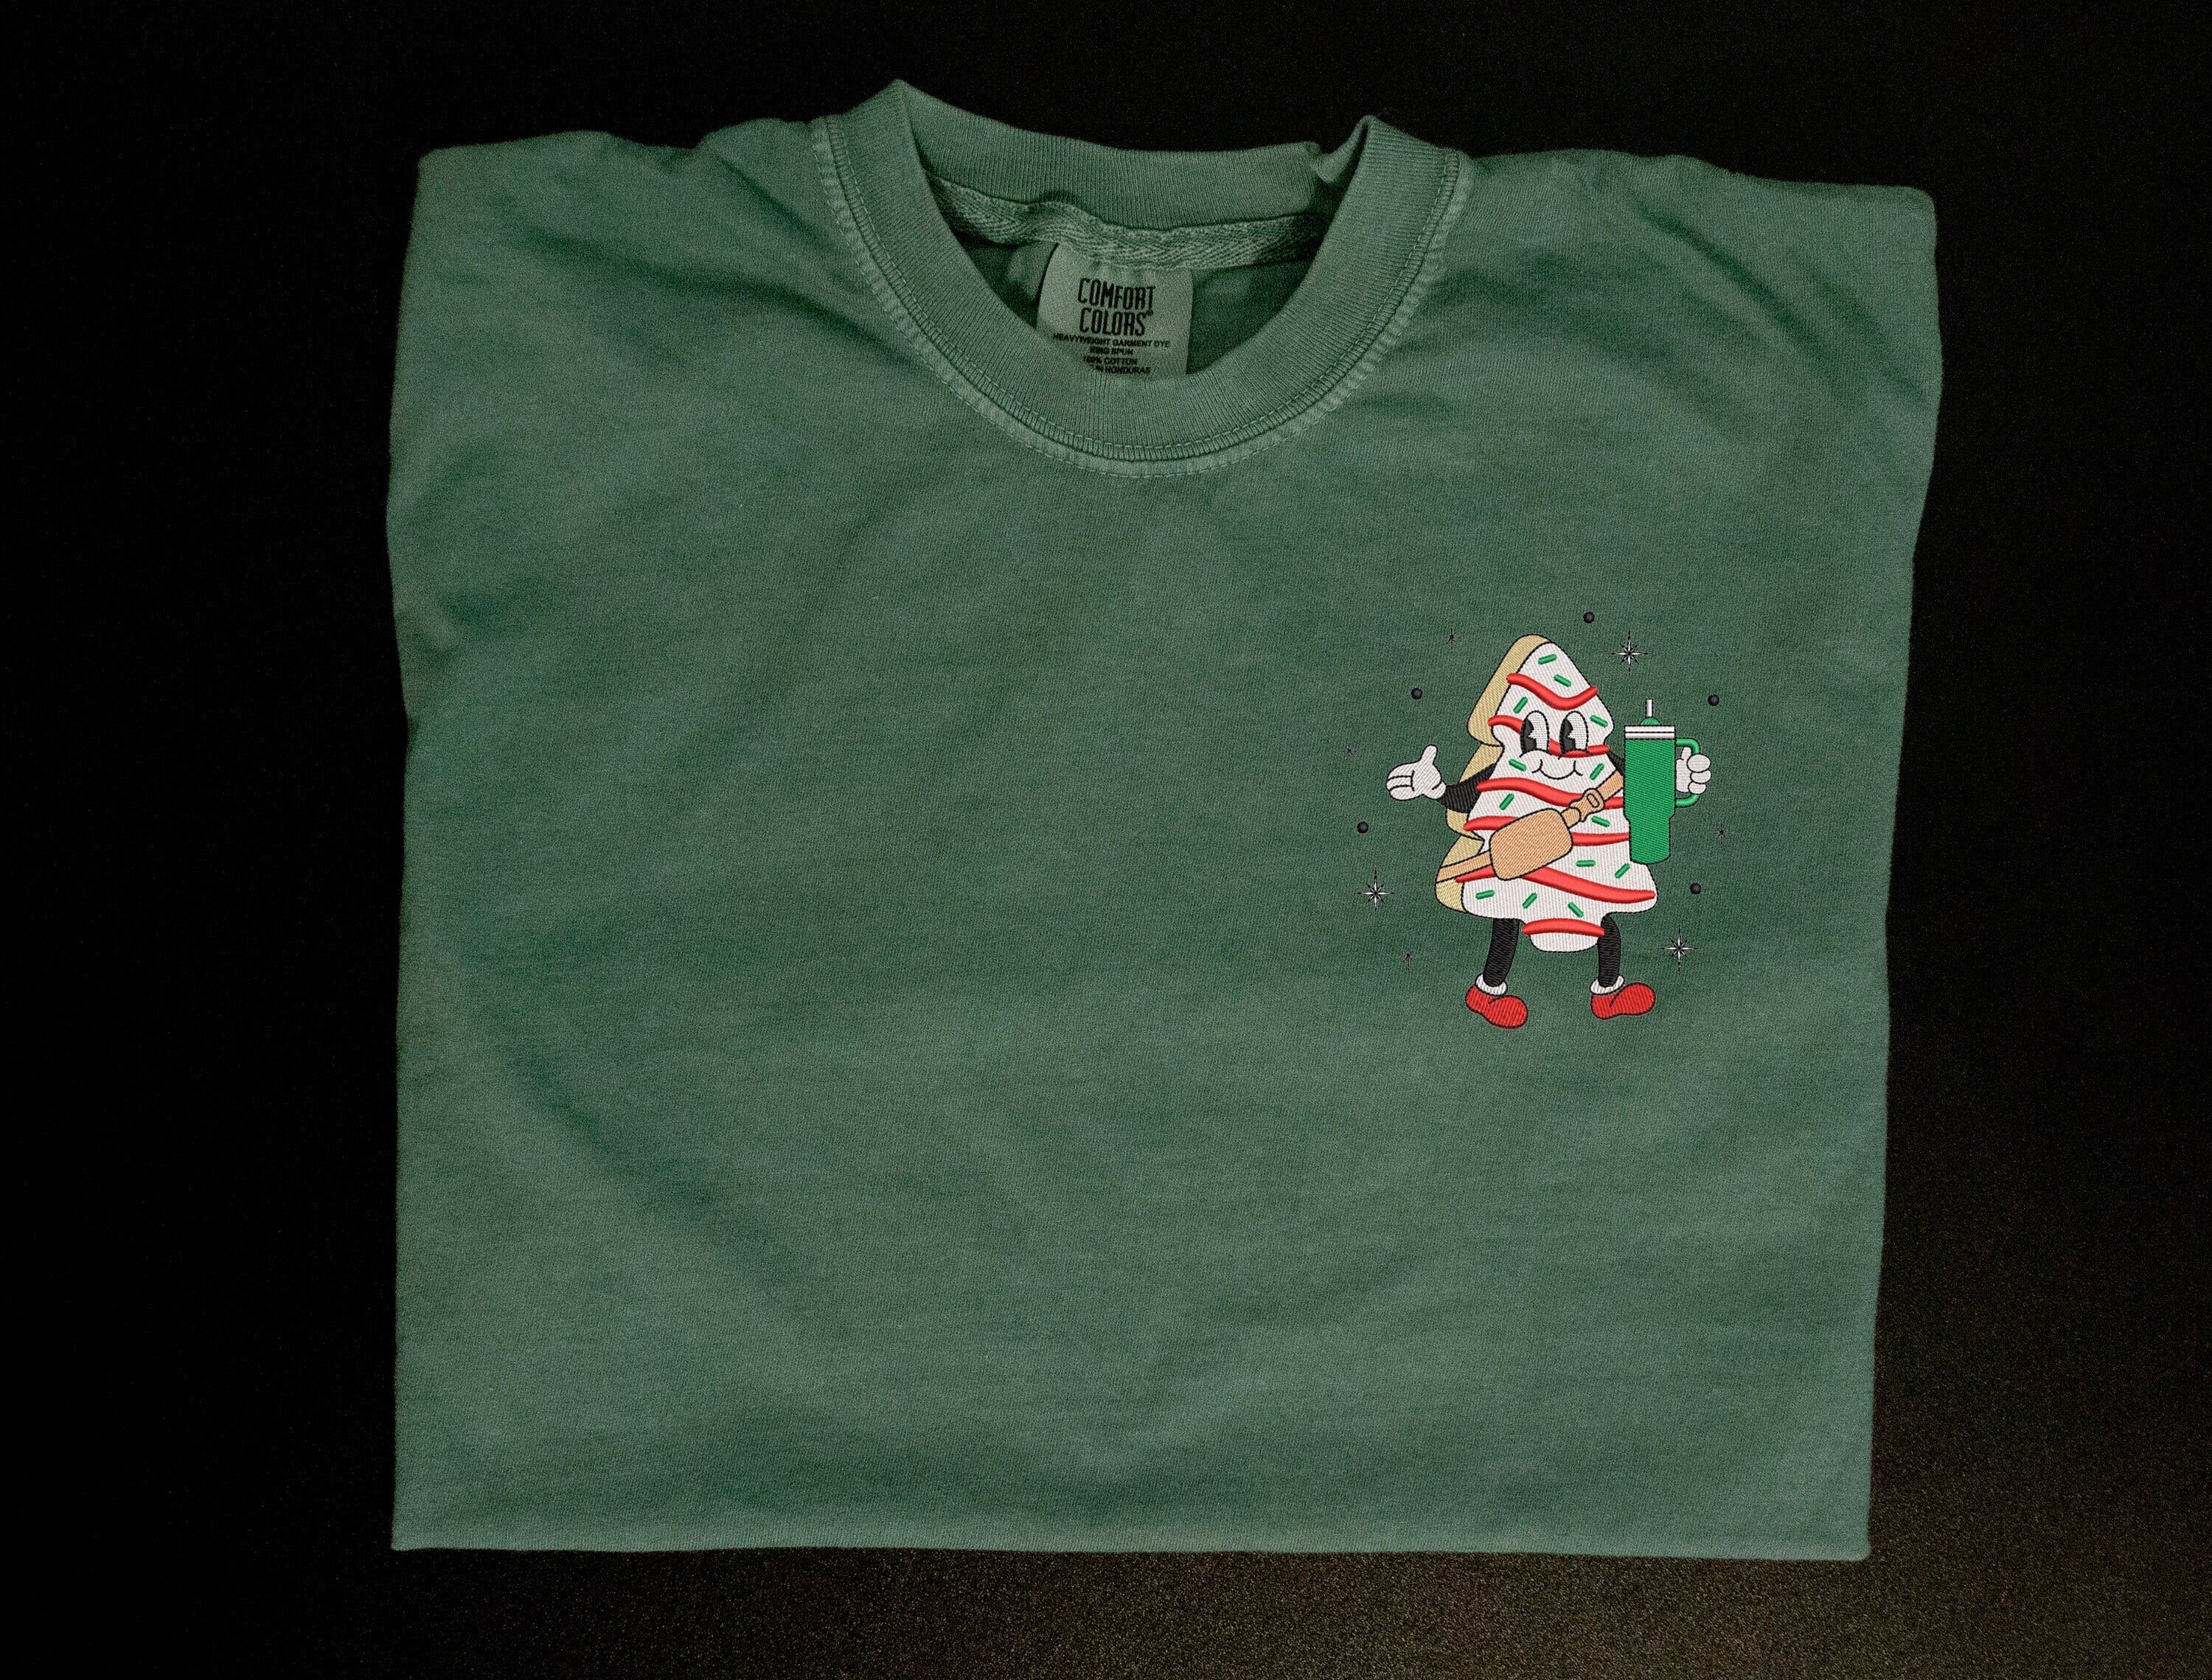 Christmas Cake with Tumbler Shirt, Christmas Tree Cake Shirt, Christmas Embroidered Shirt, Christmas Cake Shirt